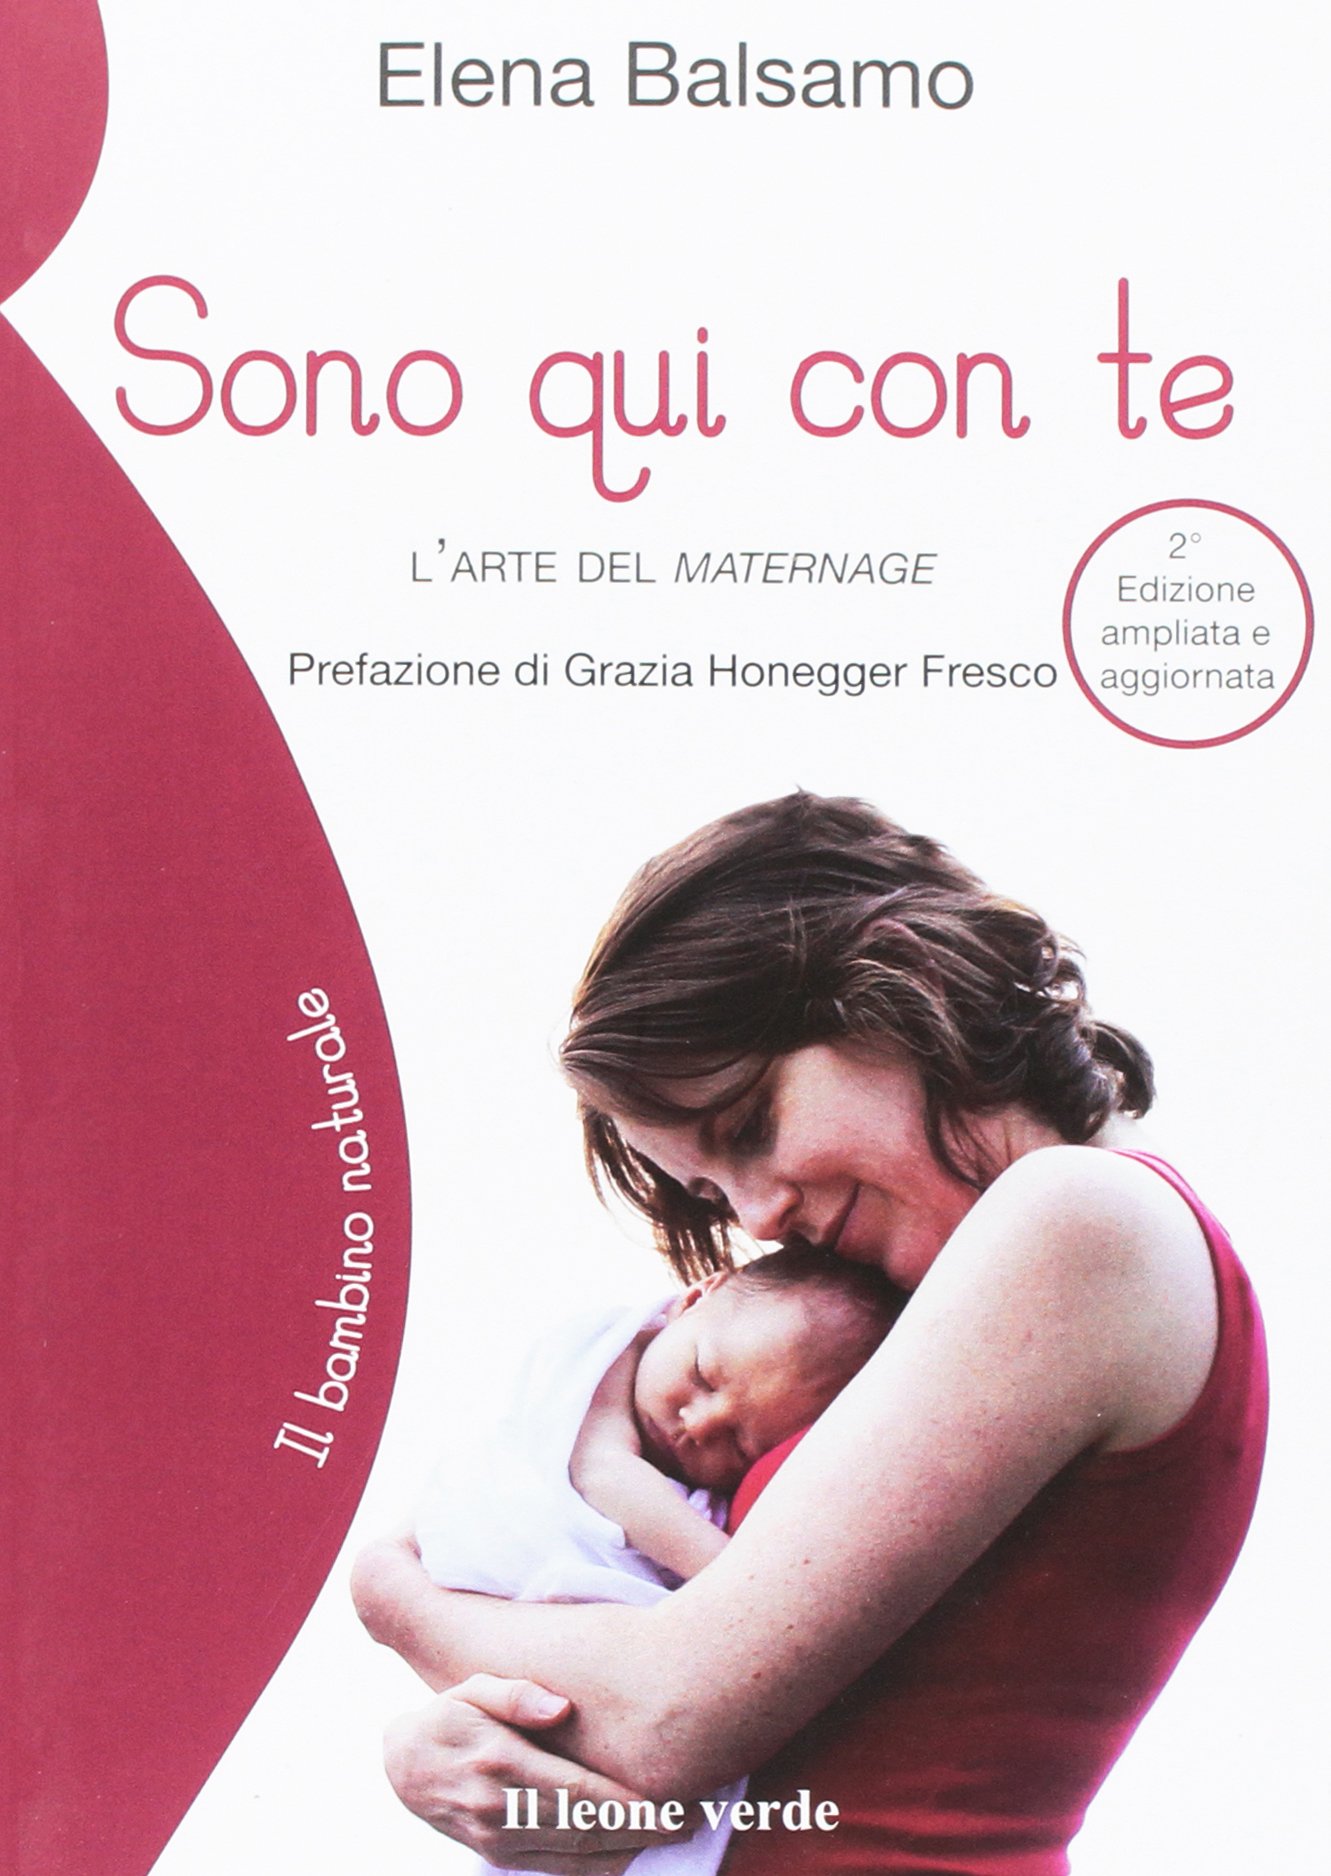 Libri per Neonati e bambini da 0 a 1 anno: Leggere ai neonati - BabyTips